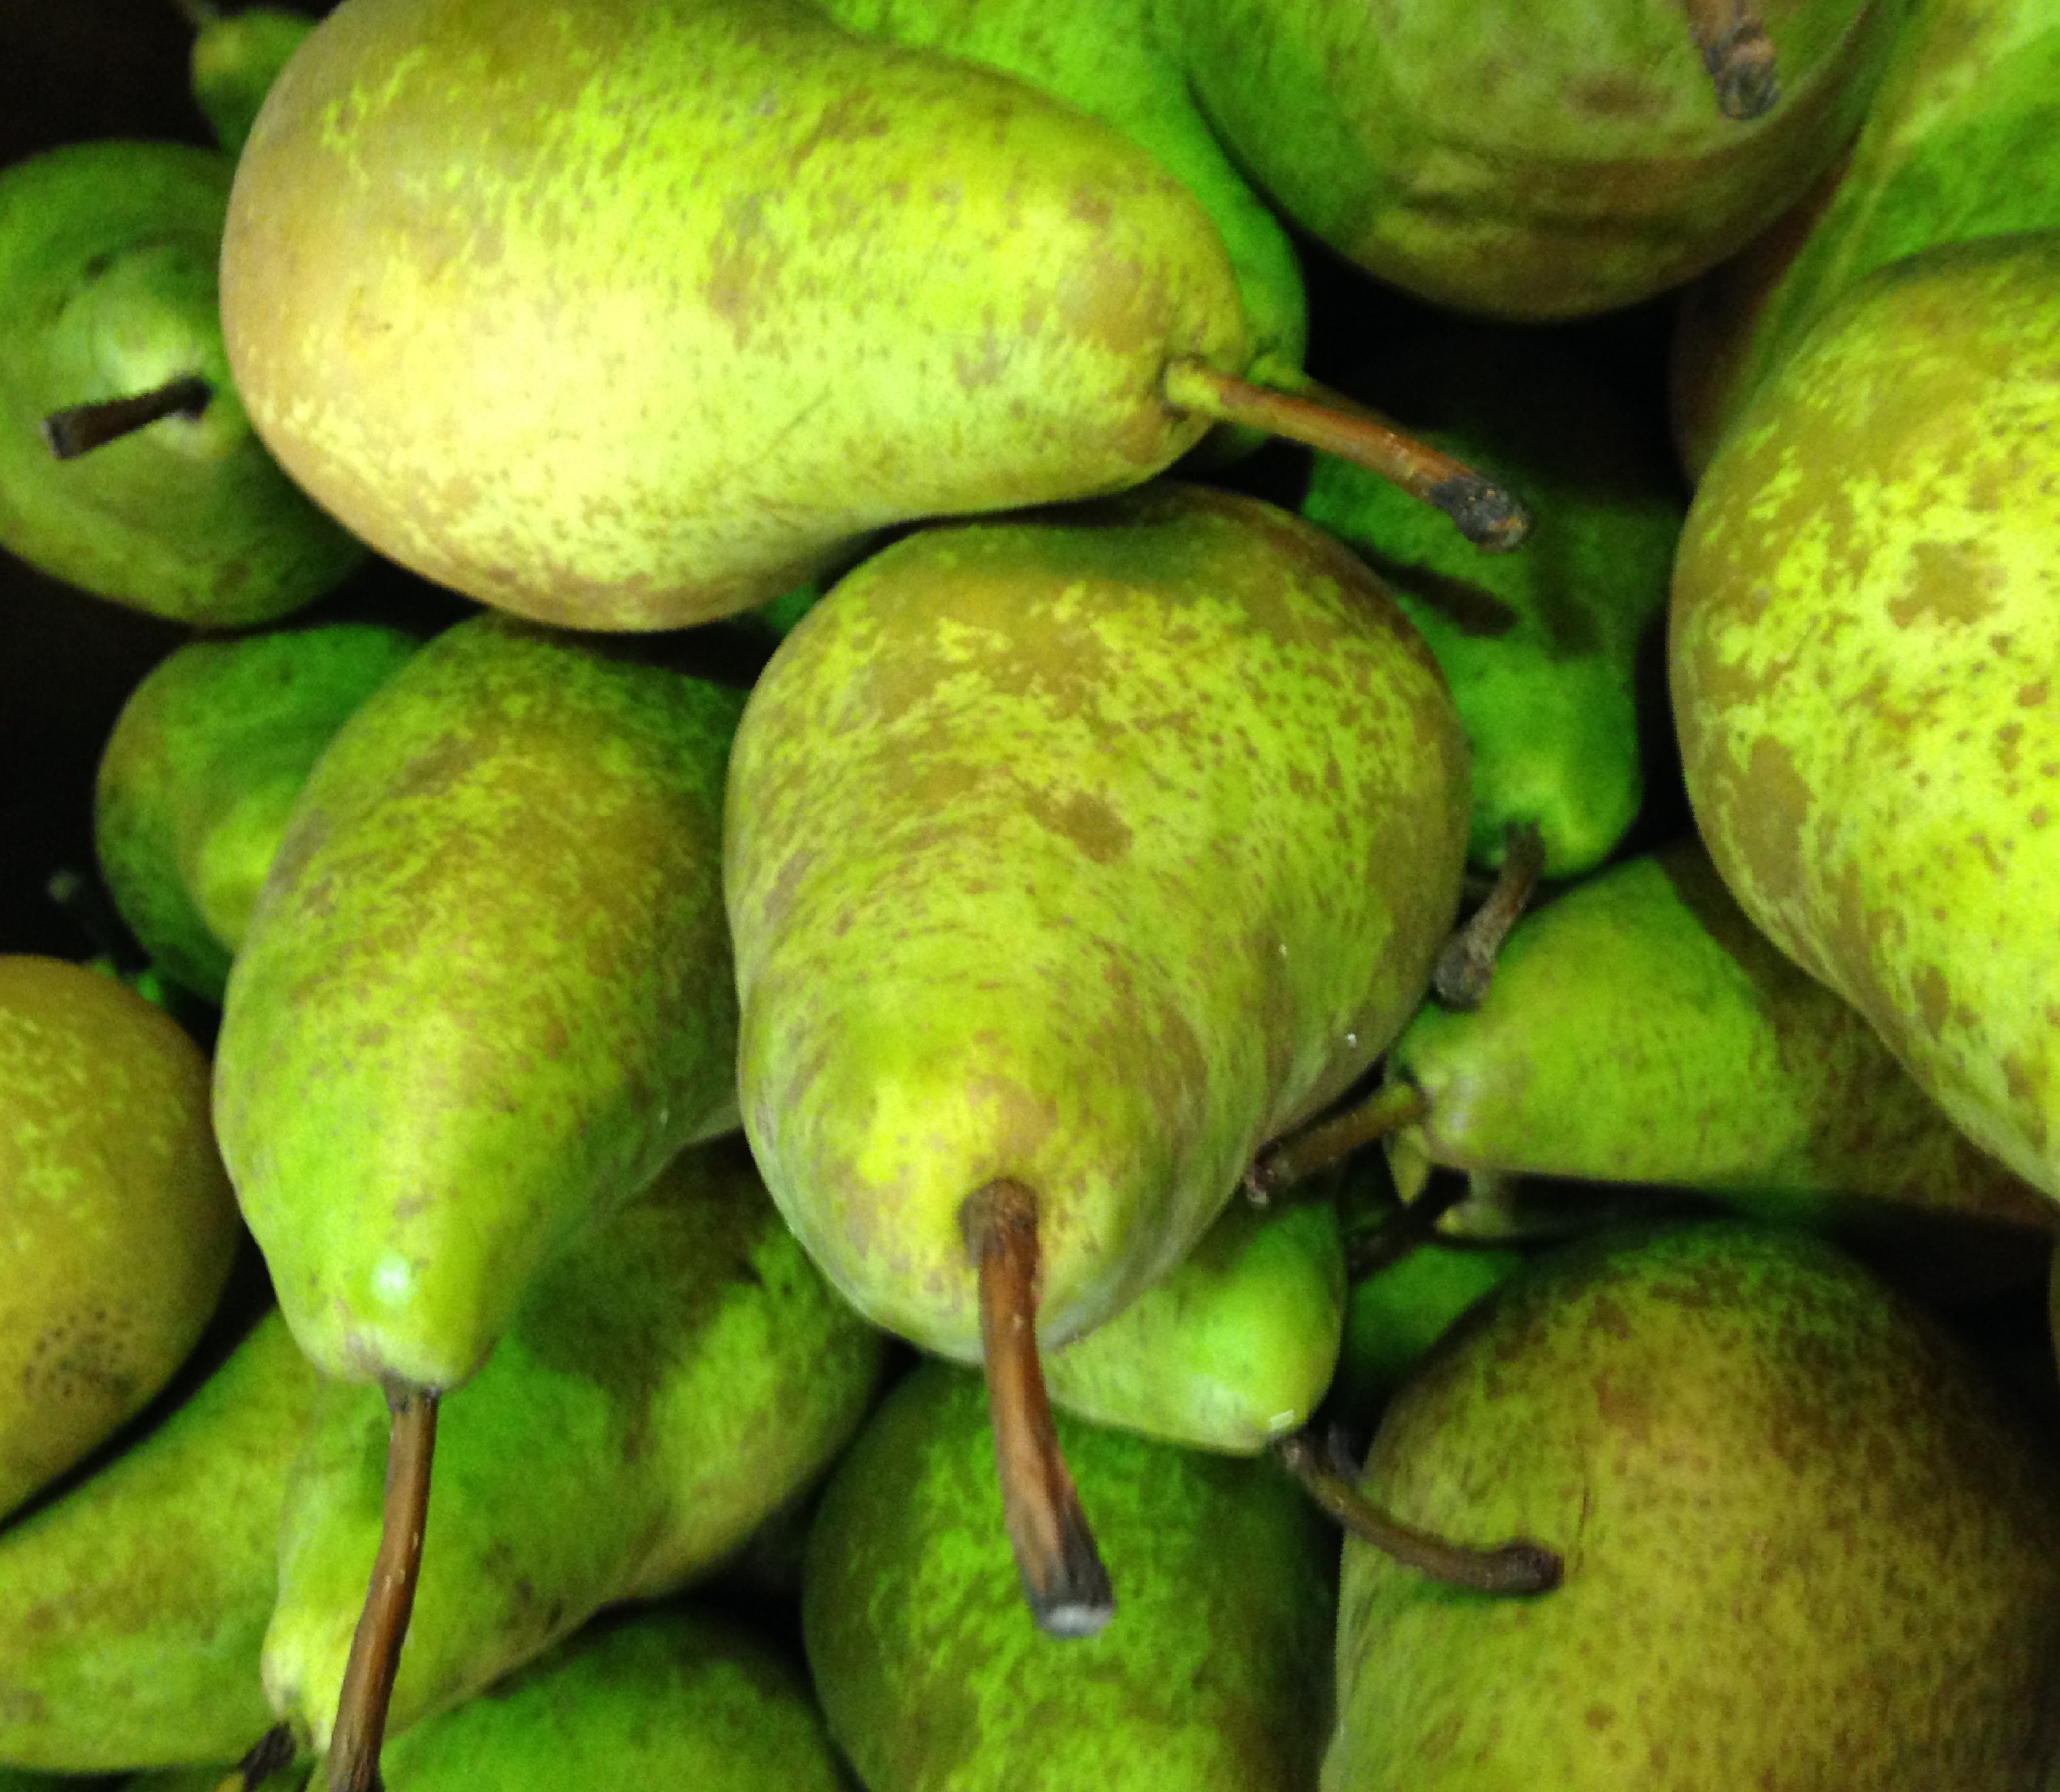 Pears - Edited